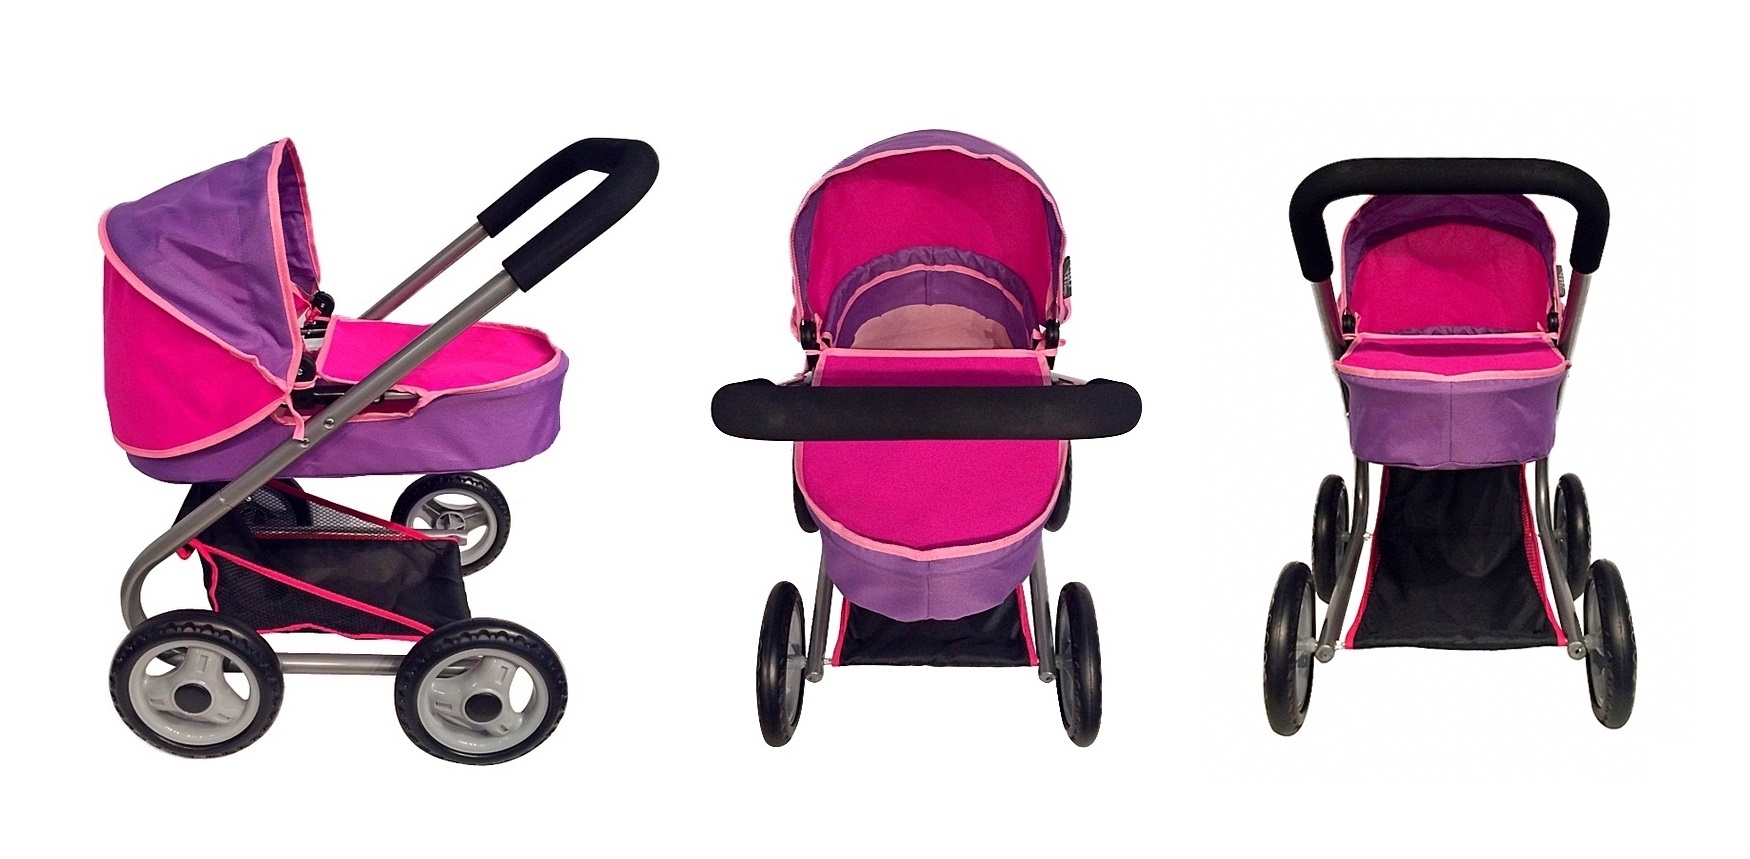 Кукольная коляска, цвет фиолетовый и фуксия  